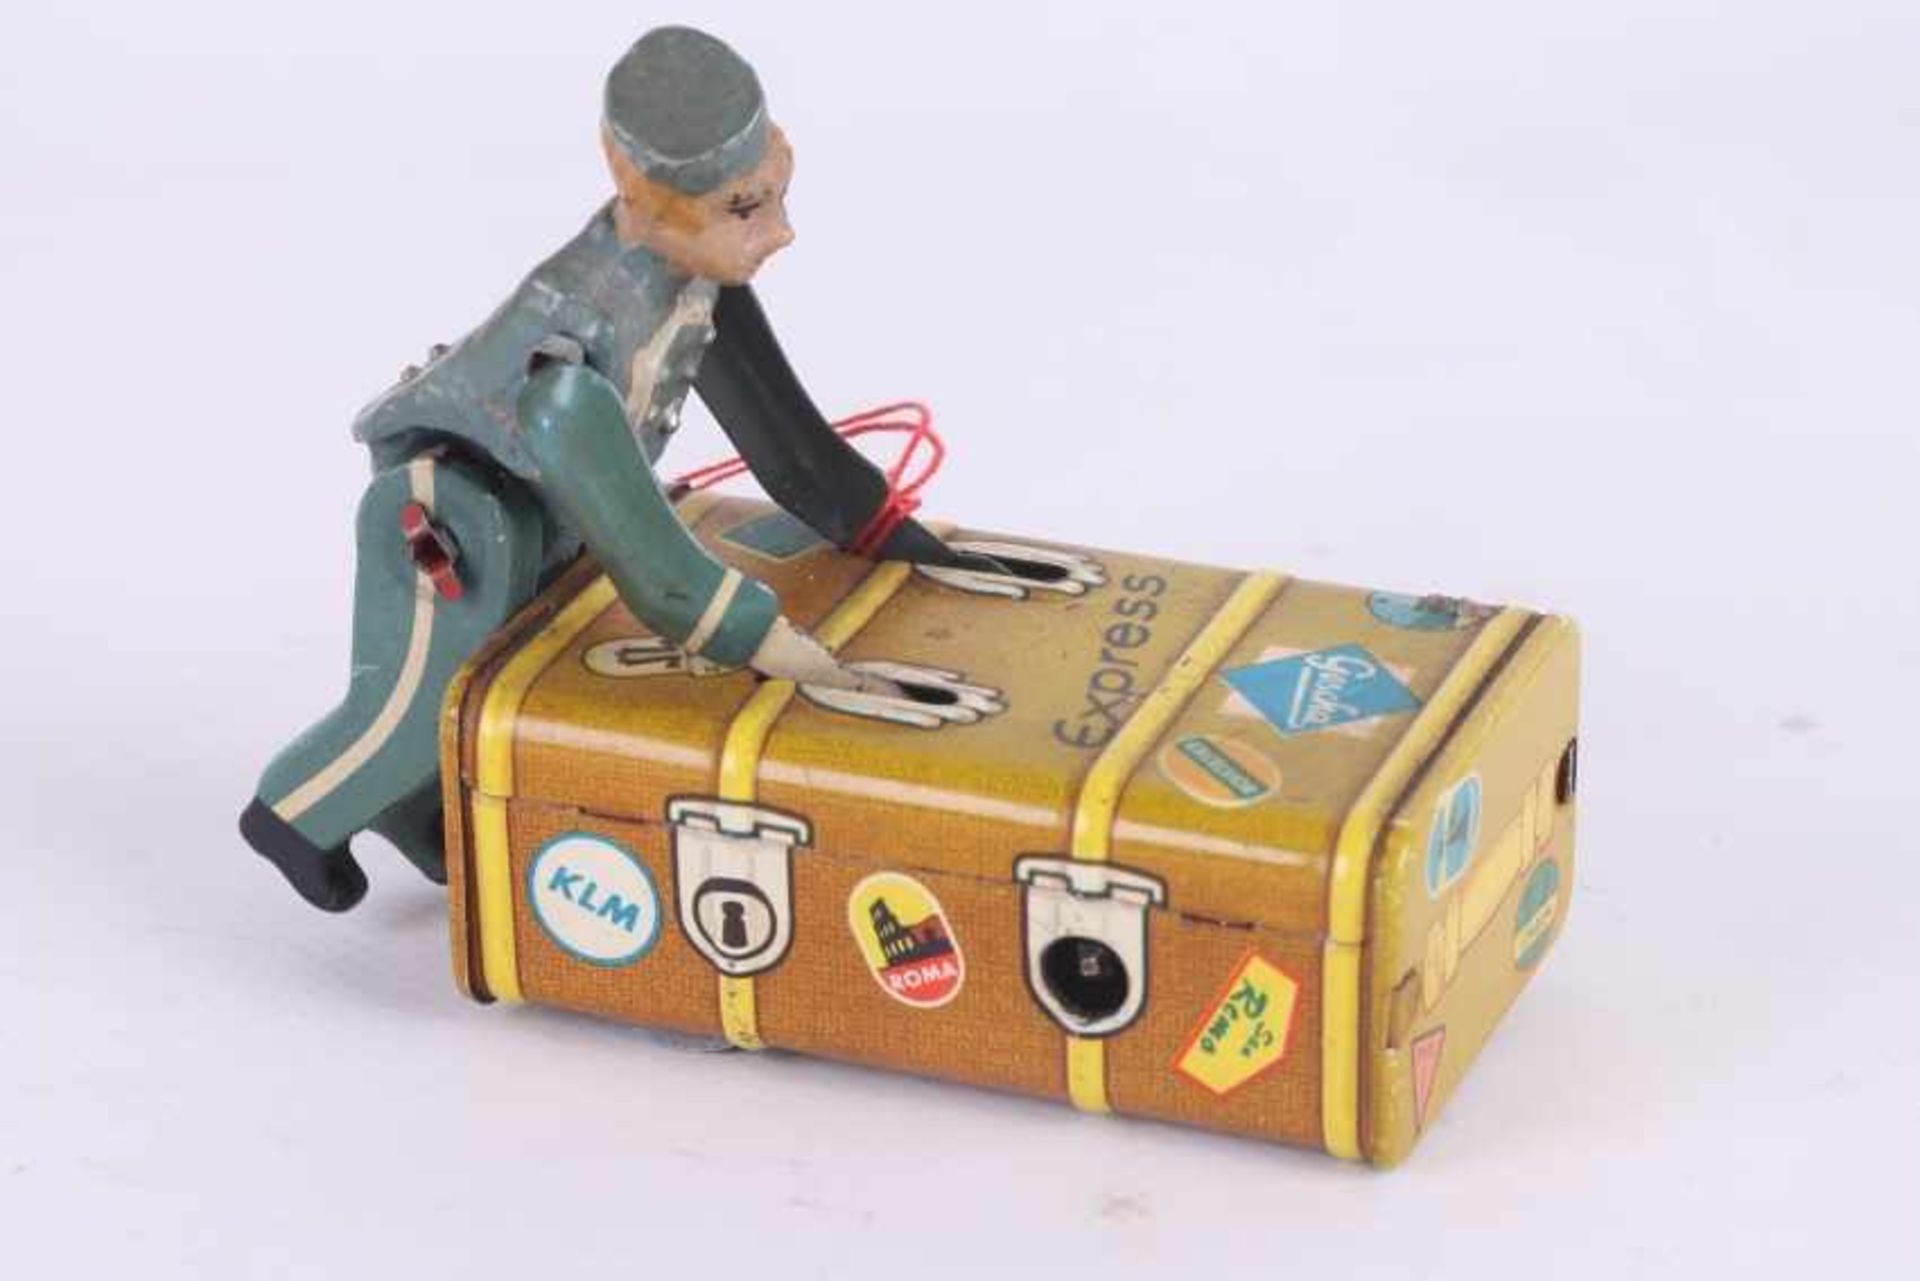 Gescha Express Koffer Boy Gescha Express Koffer Boy, aus den 1950er Jahren, mit Gescha-Raute und